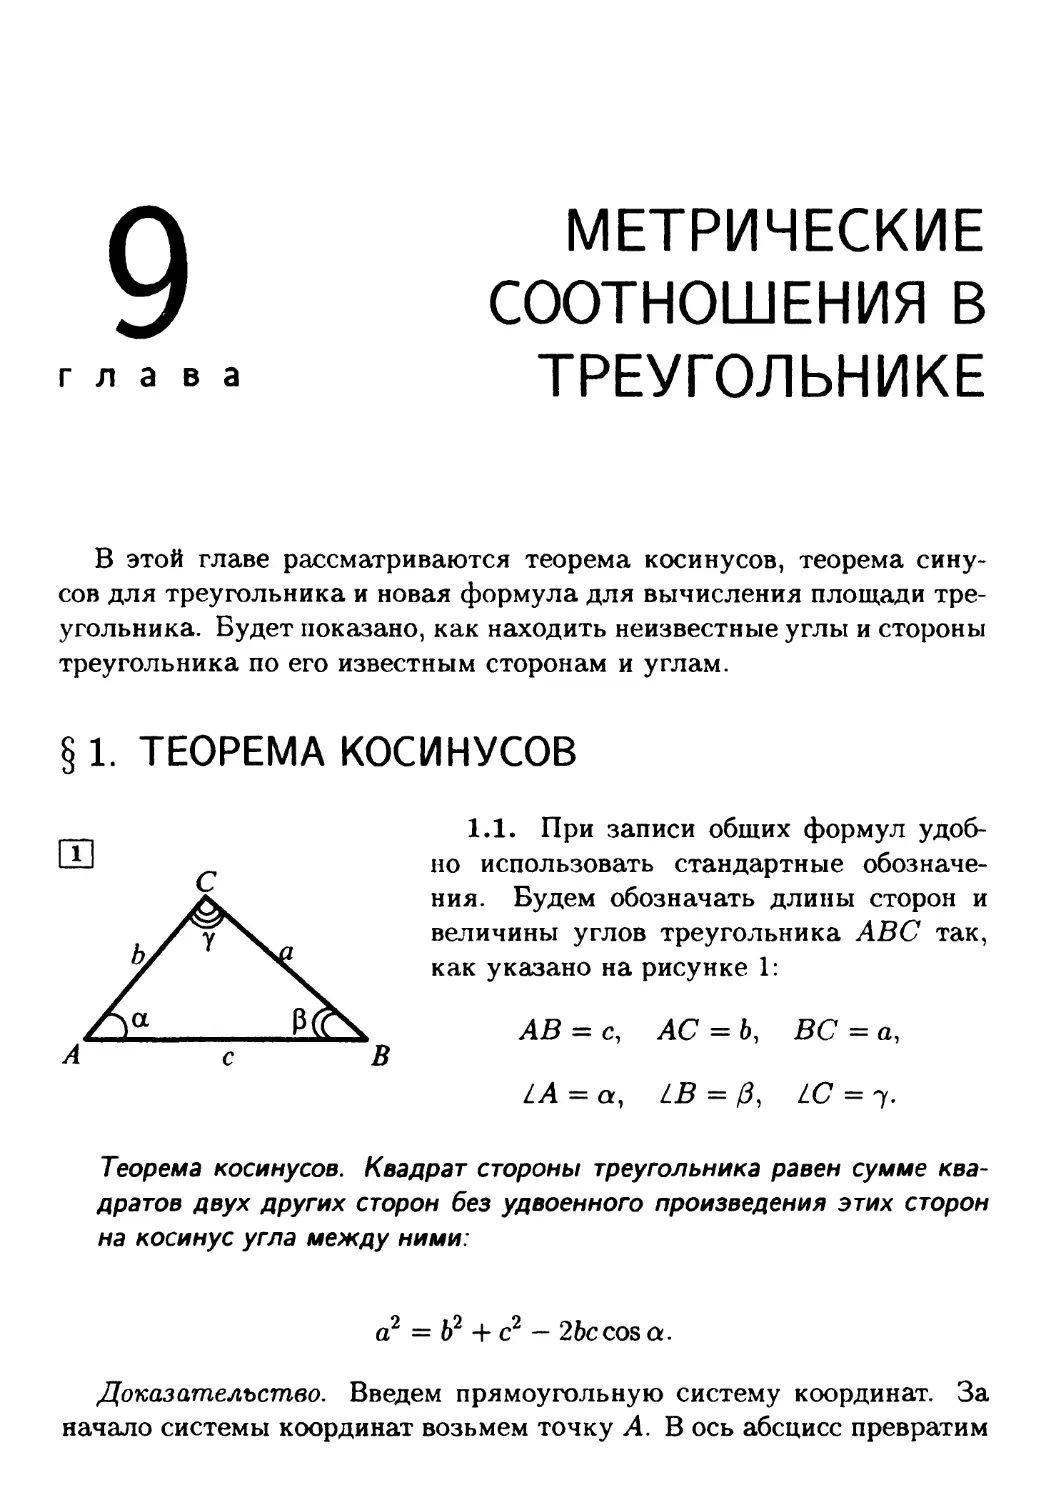 Глава 9. Метрические соотношения в треугольнике